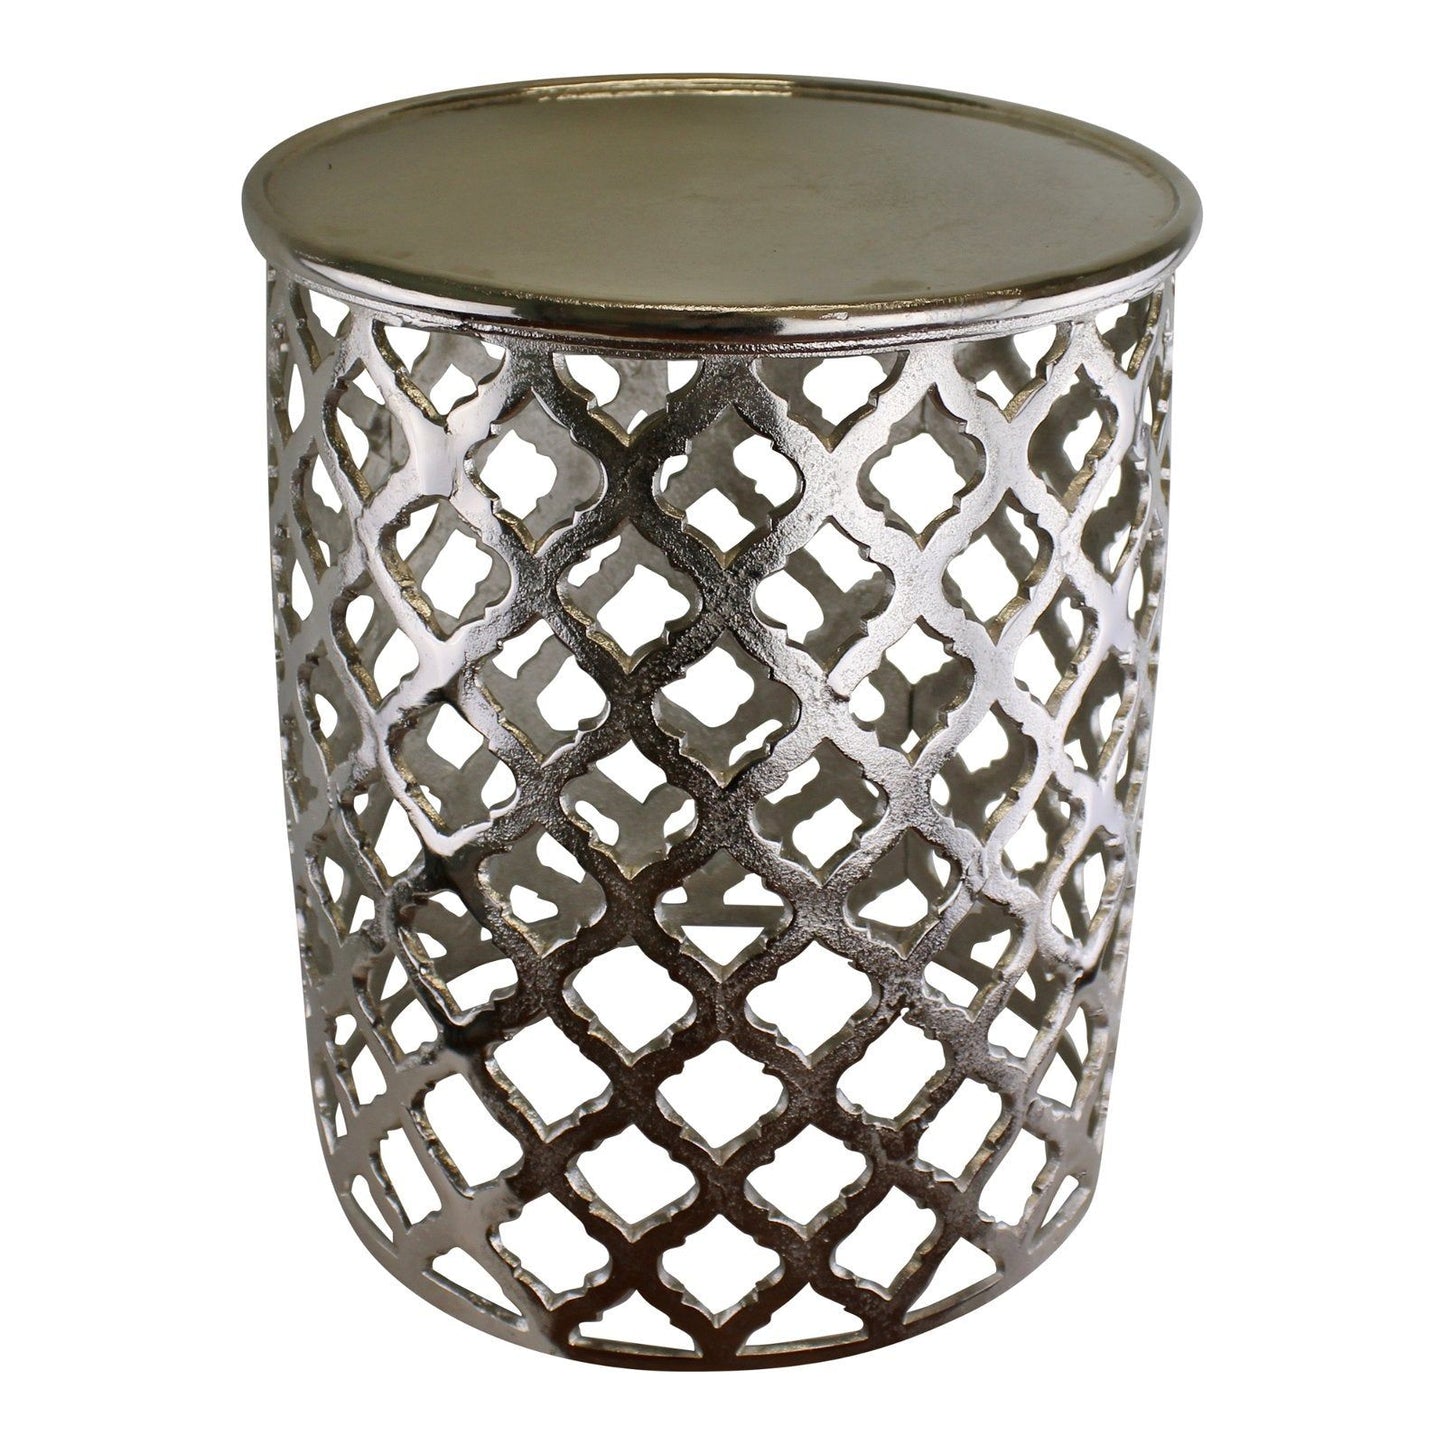 Decorative Silver Metal Side Table, Lattice design - Ashton and Finch